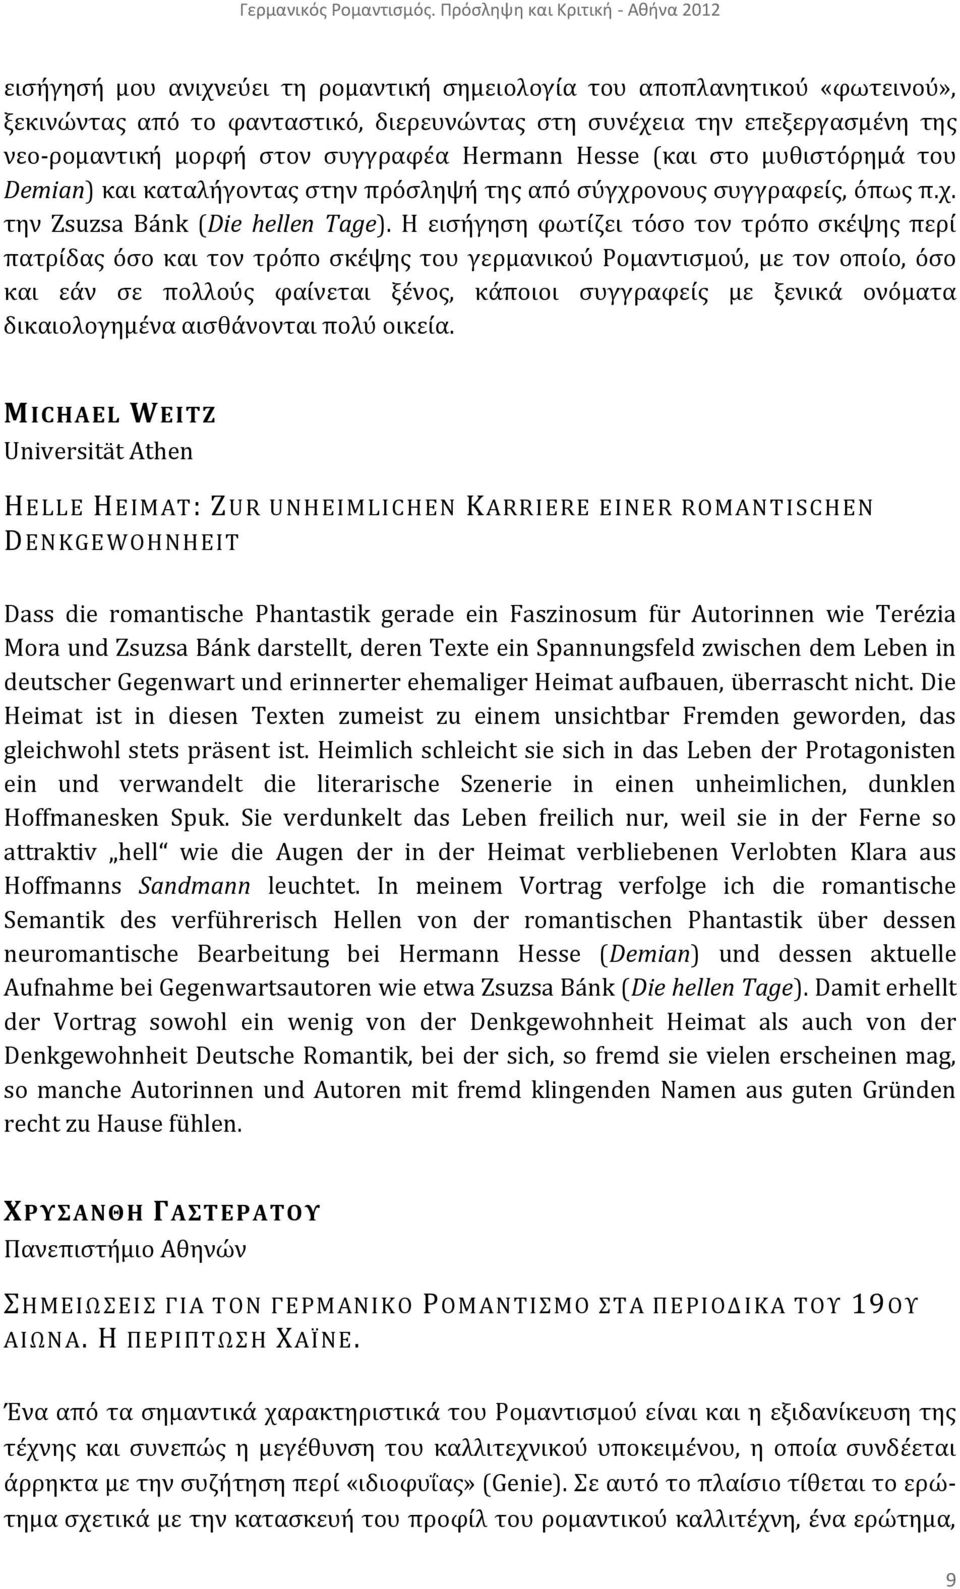 νεο-ρομαντική μορφή στον συγγραφέα Hermann Hesse (και στο μυθιστόρημά του Demian) και καταλήγοντας στην πρόσληψή της από σύγχρονους συγγραφείς, όπως π.χ. την Zsuzsa Bánk (Die hellen Tage).